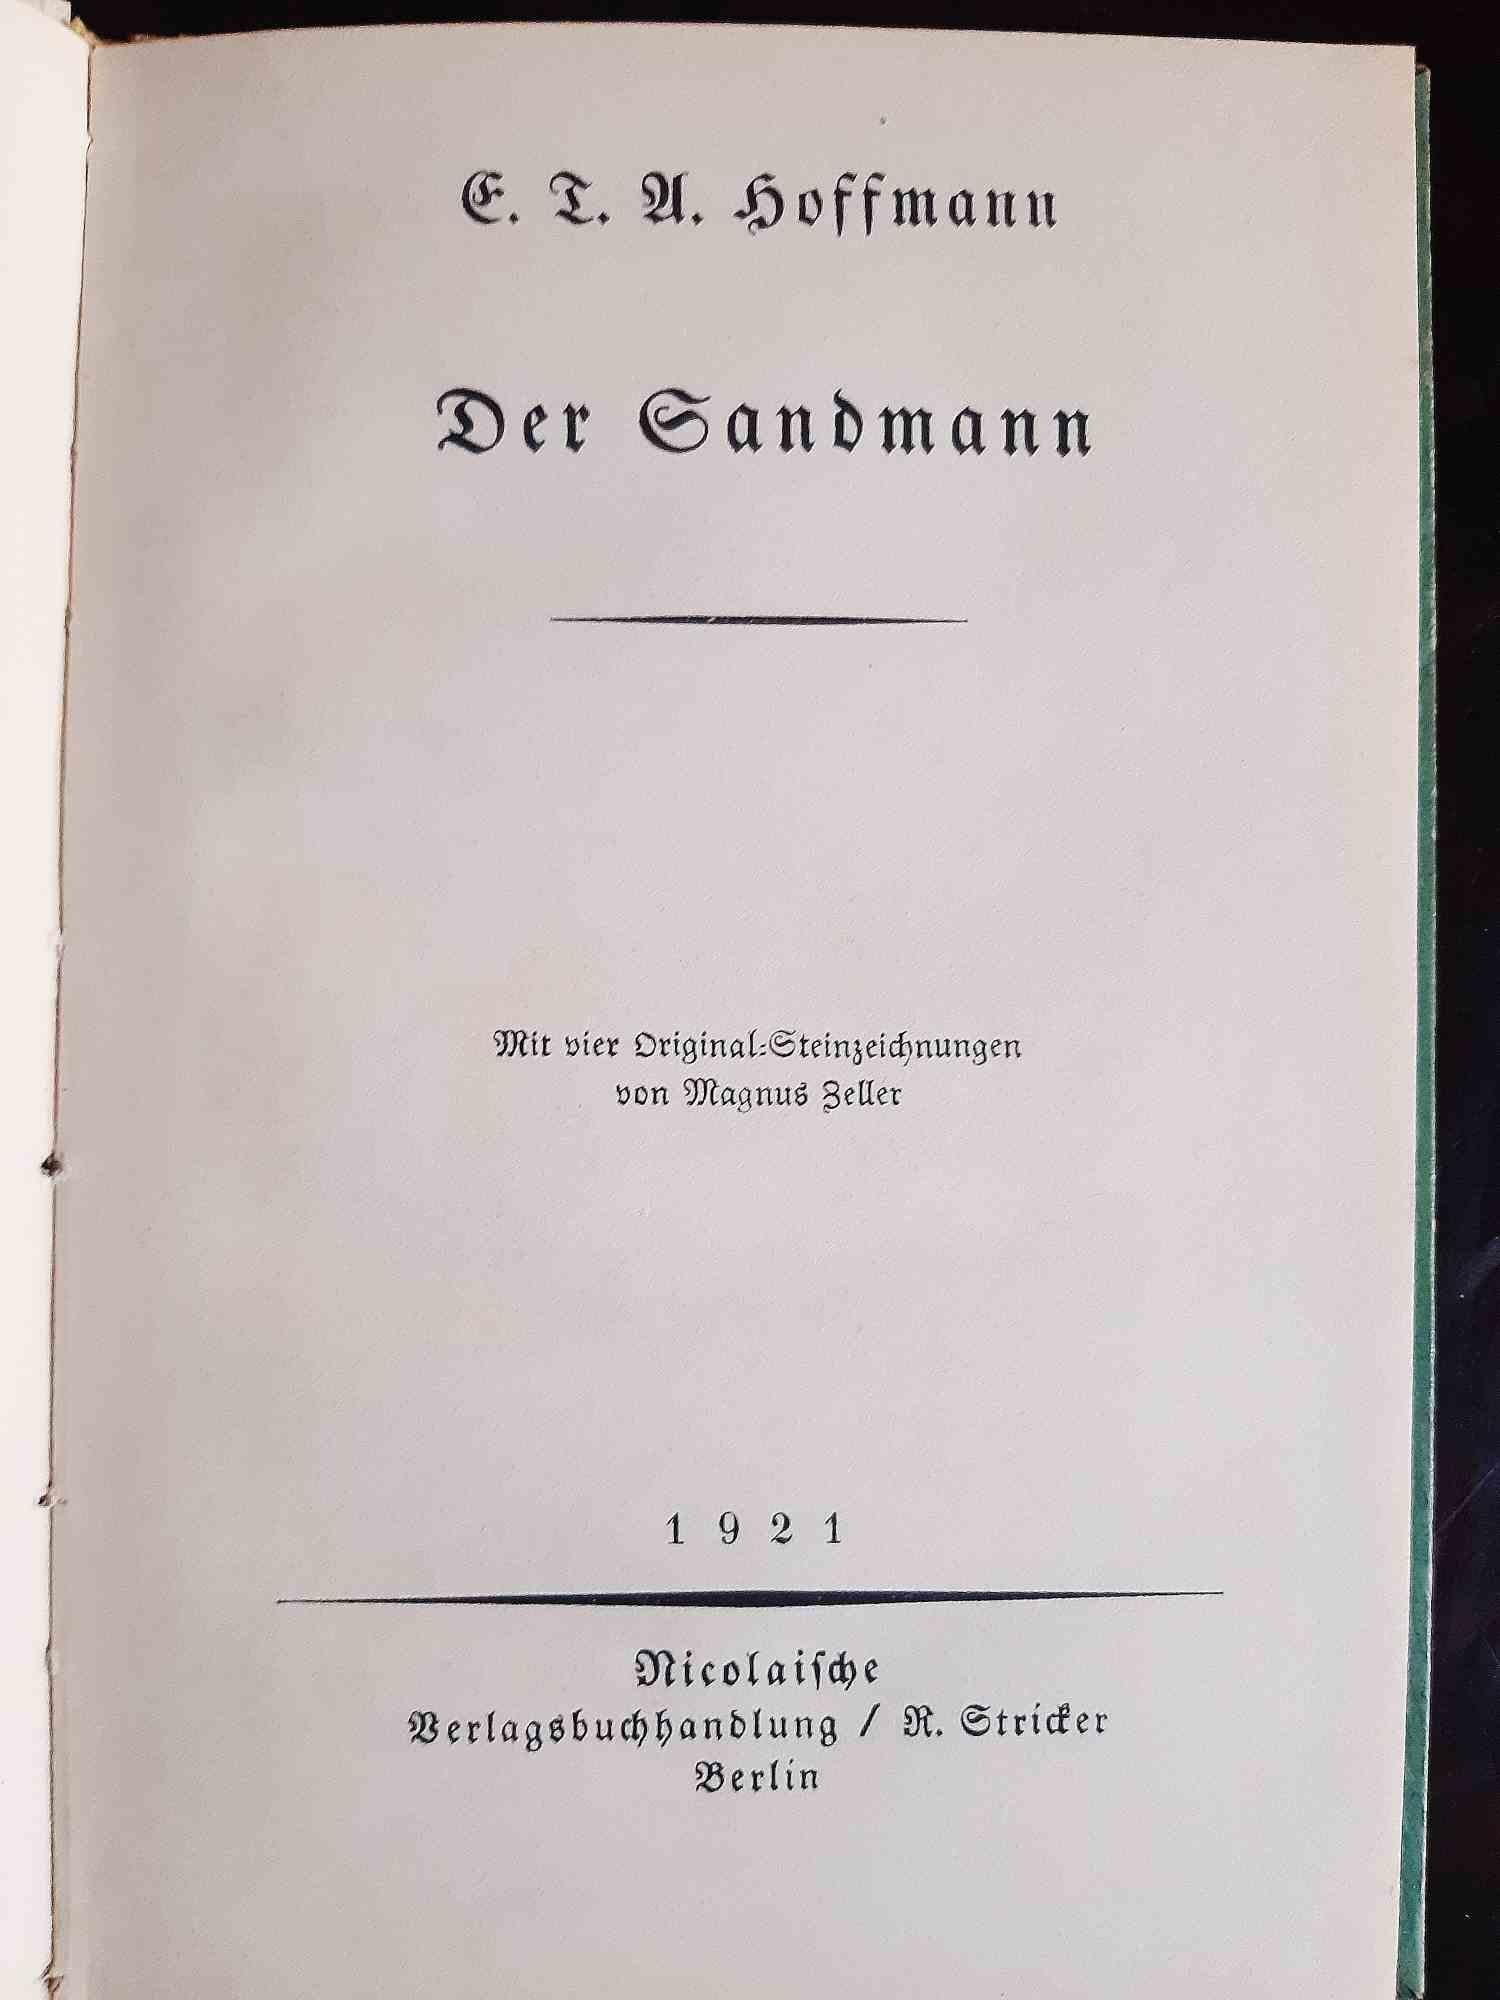 Der Sandmann - Book Illustrated by Magnus Zeller - 1921 1